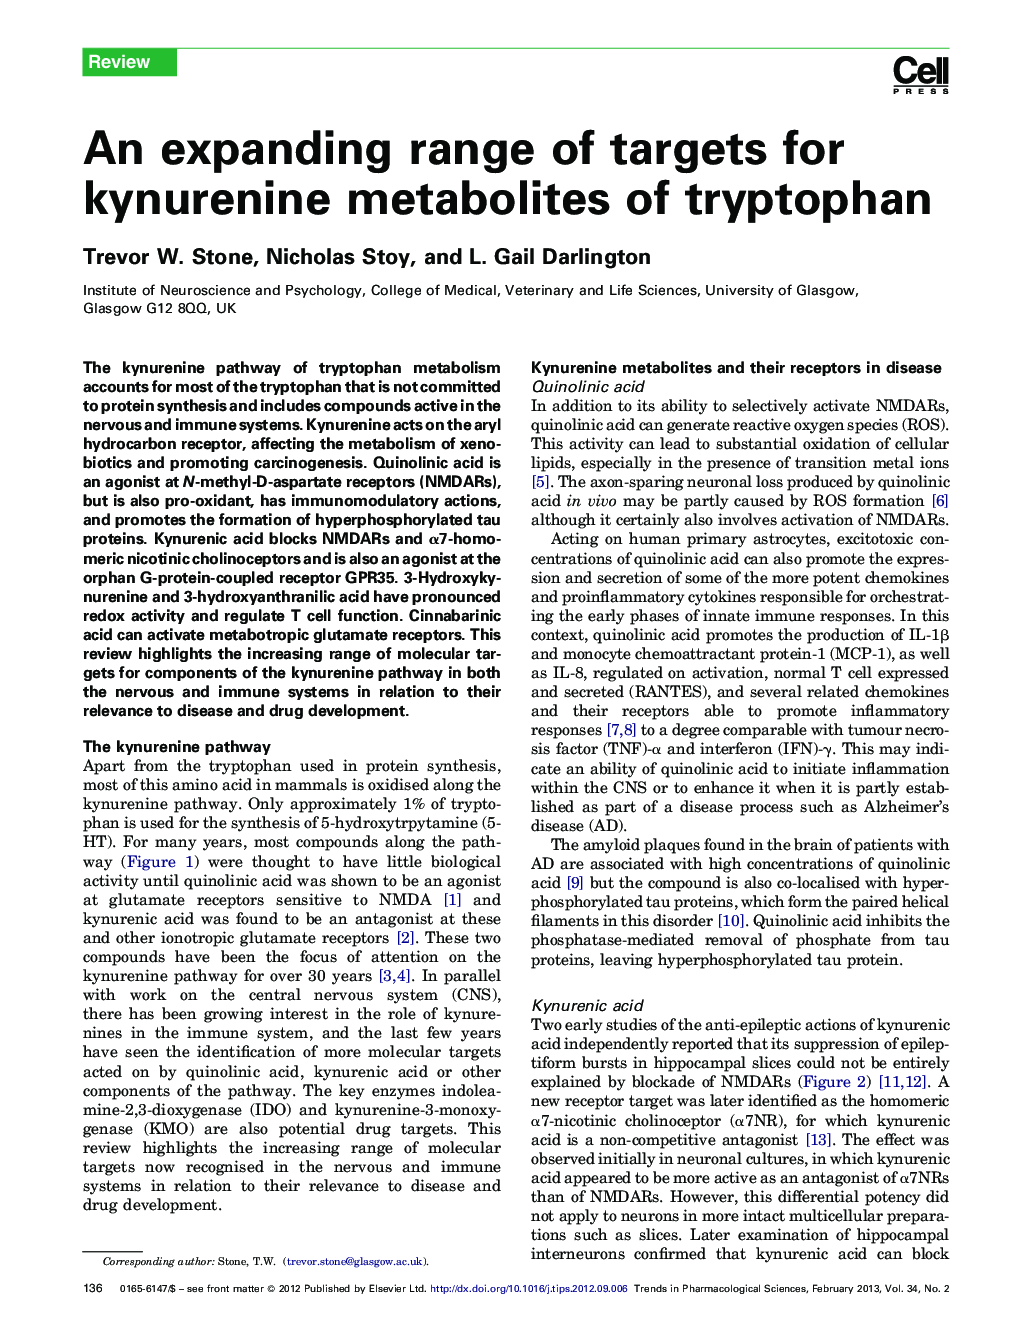 An expanding range of targets for kynurenine metabolites of tryptophan